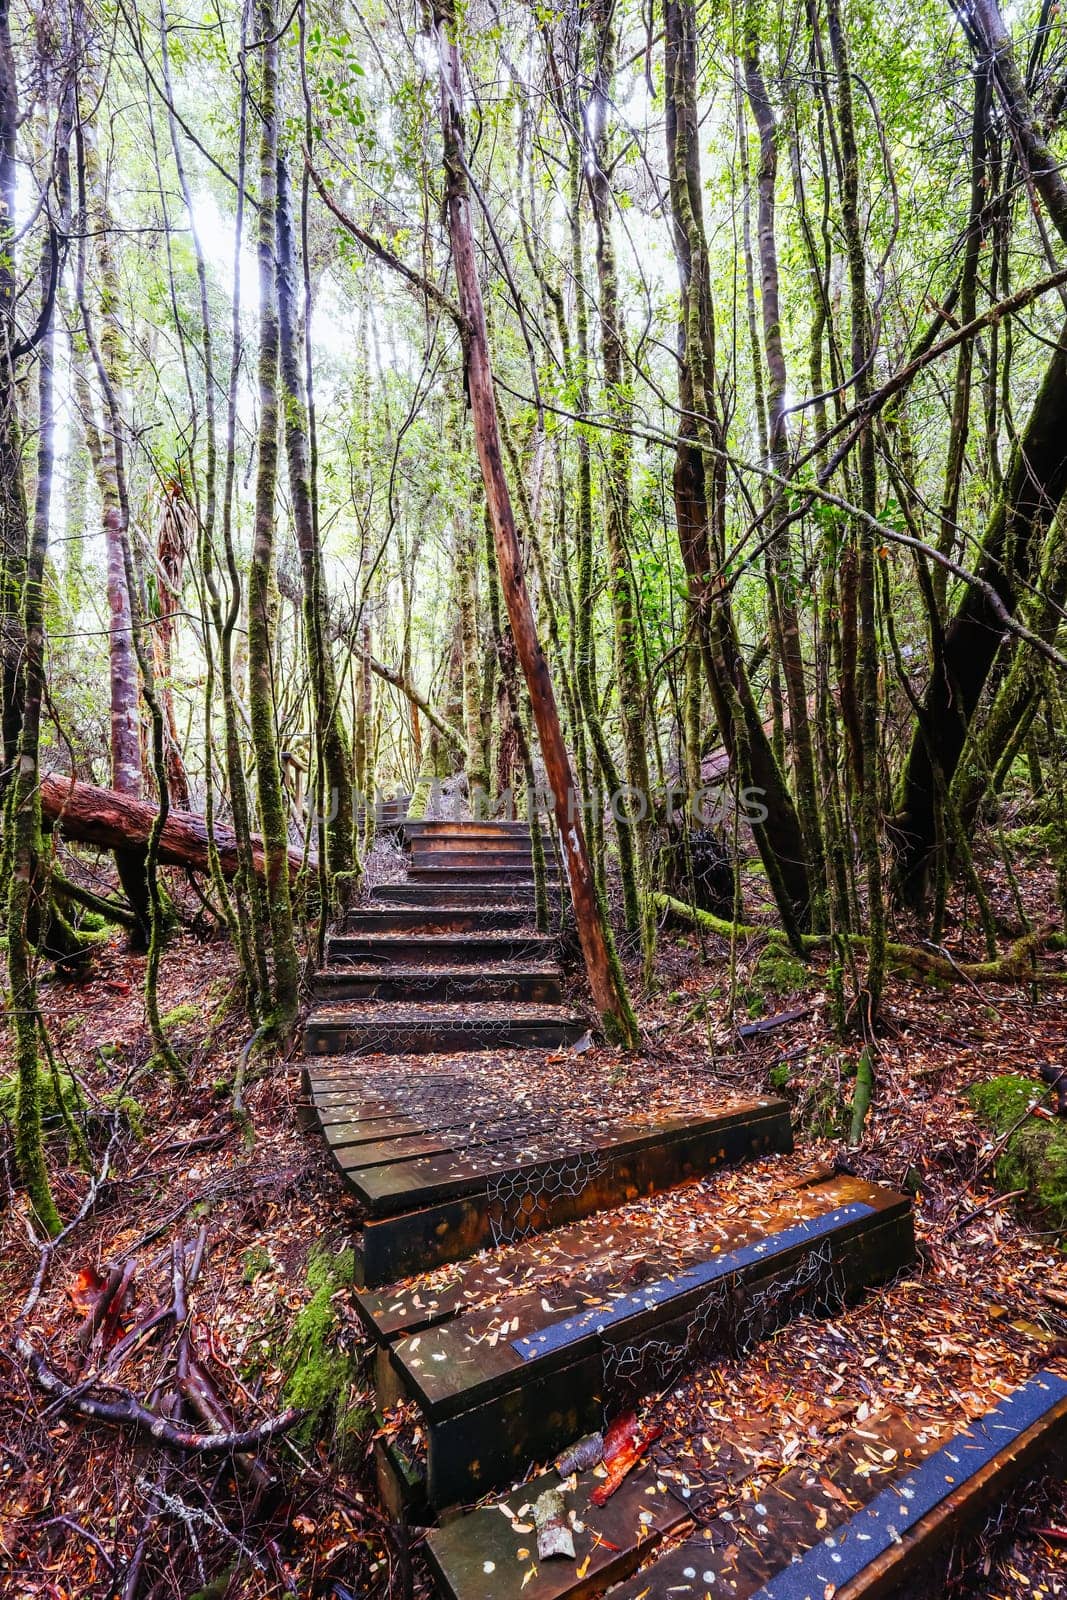 Creepy Crawly Trail in Tasmania Australia by FiledIMAGE